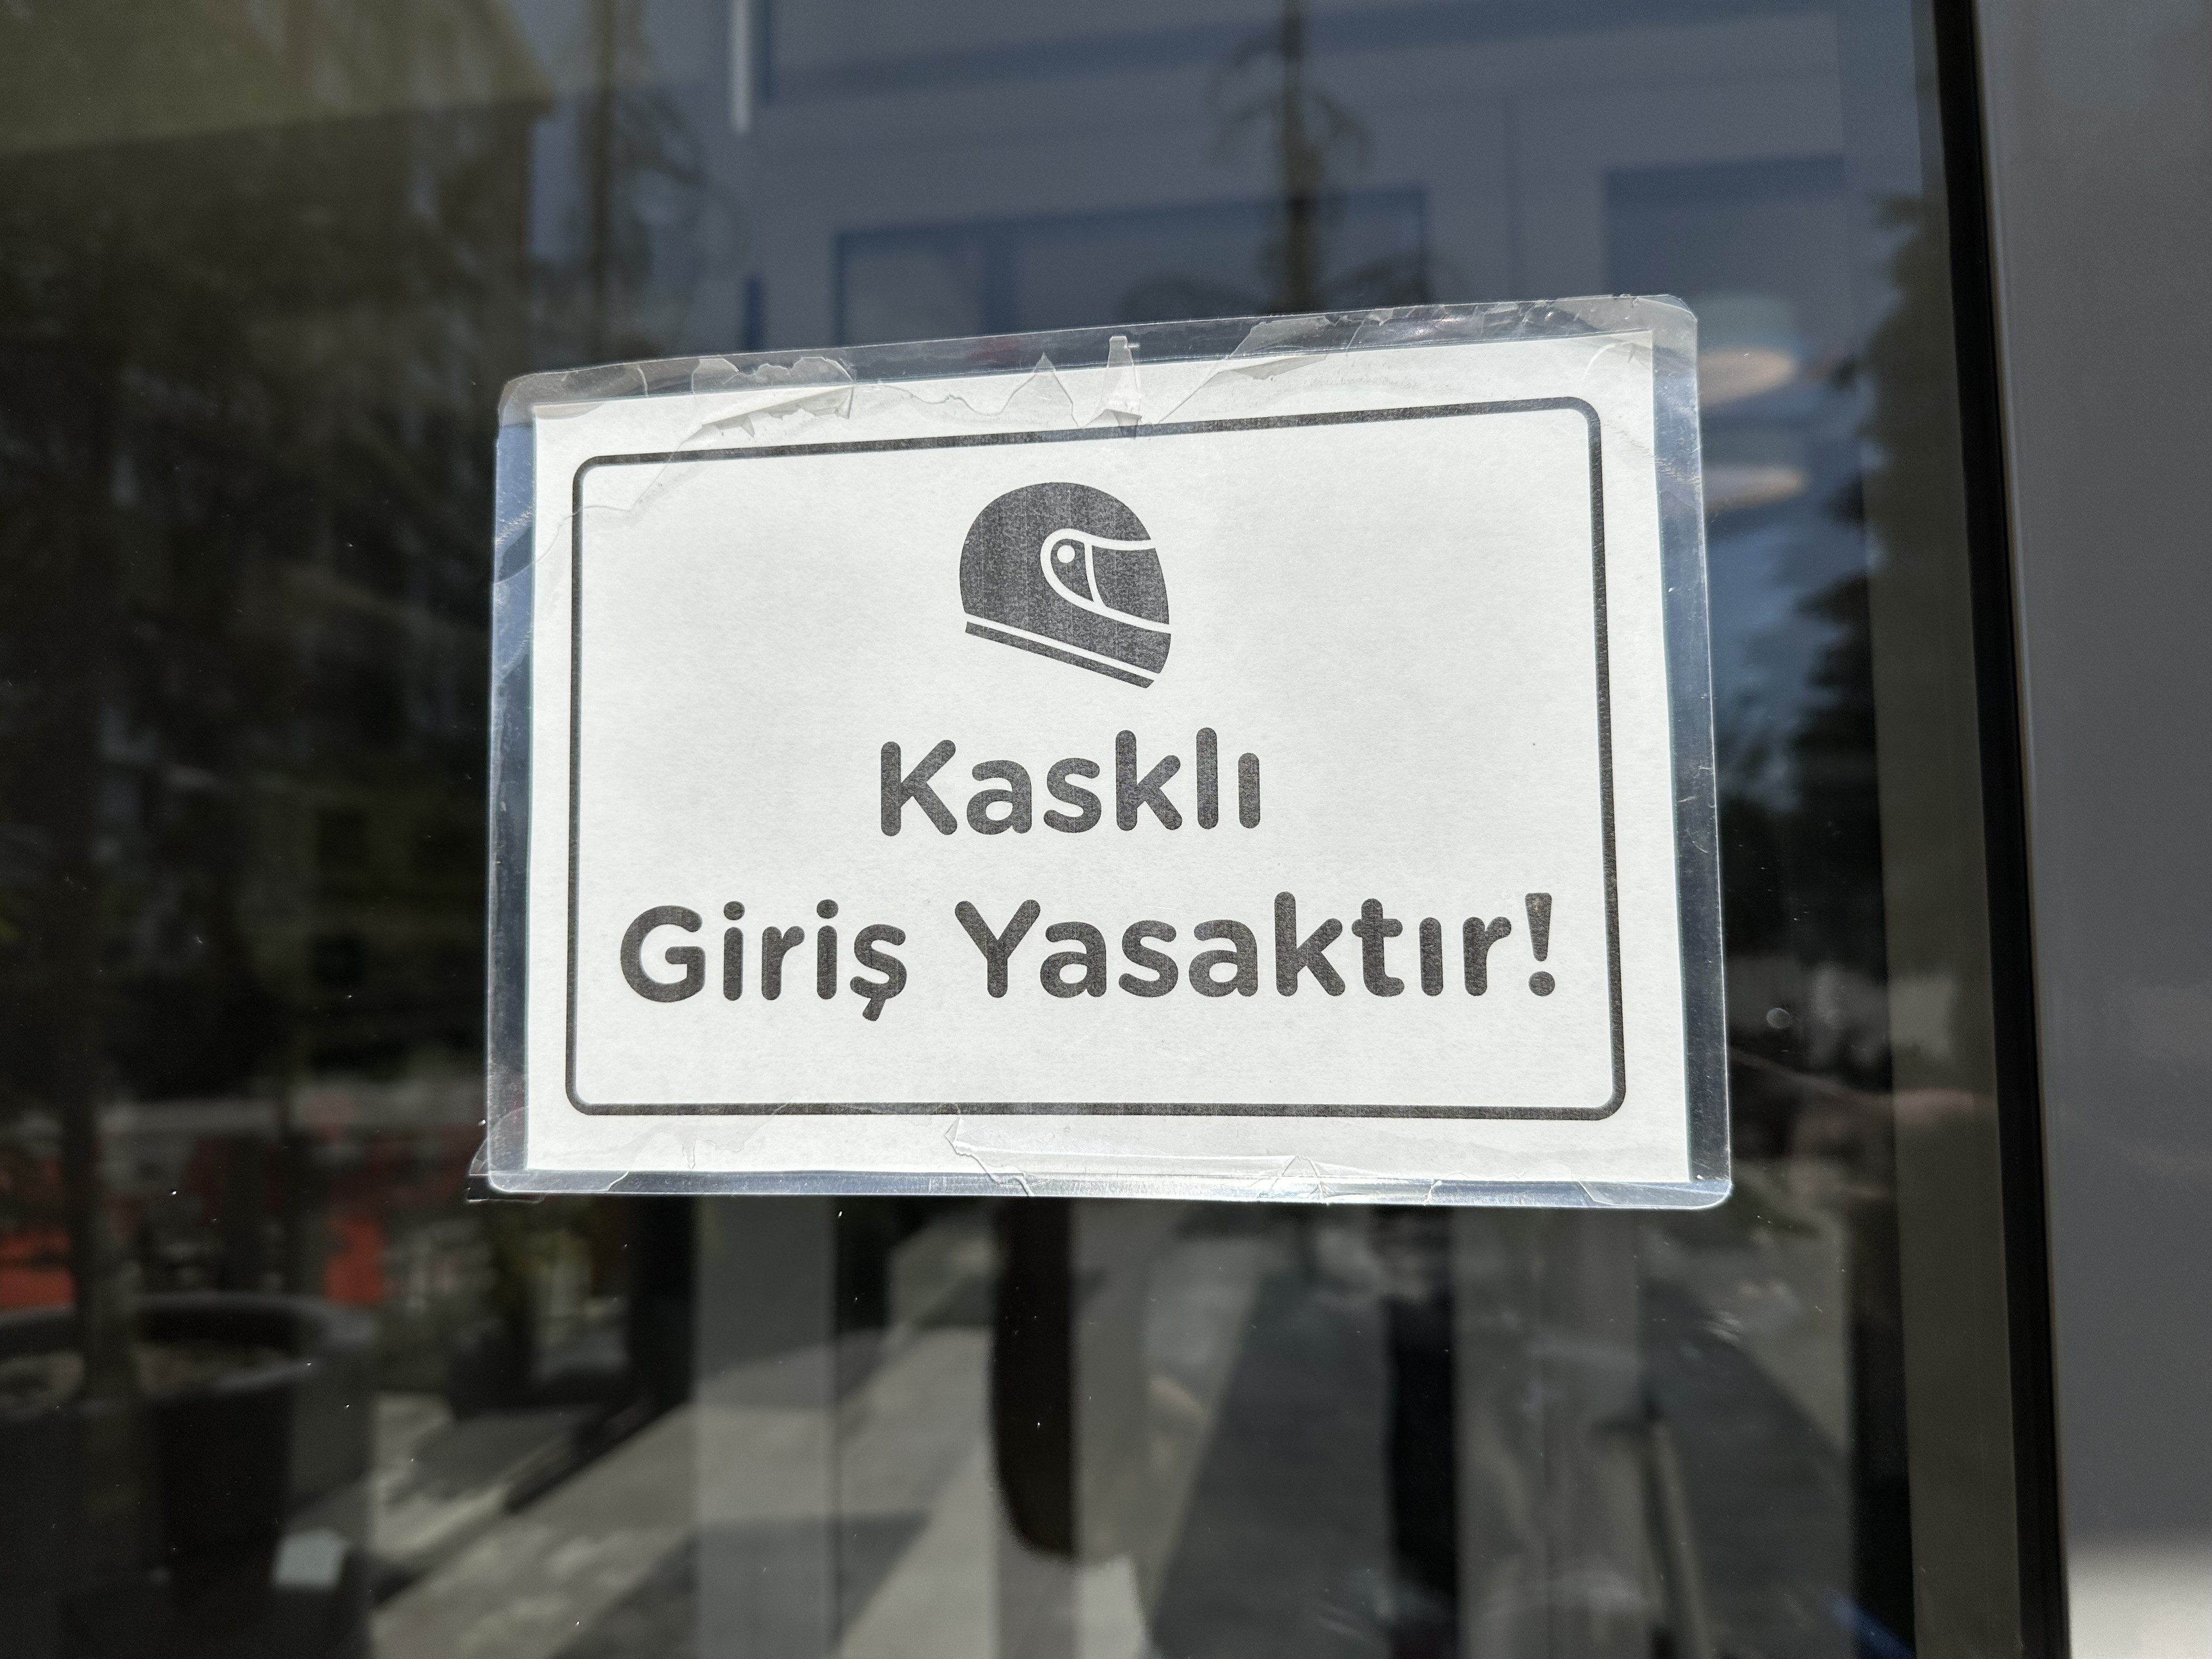 İstanbul'un ardından sitelere kasklı giriş yasağı Eskişehir’de de başladı